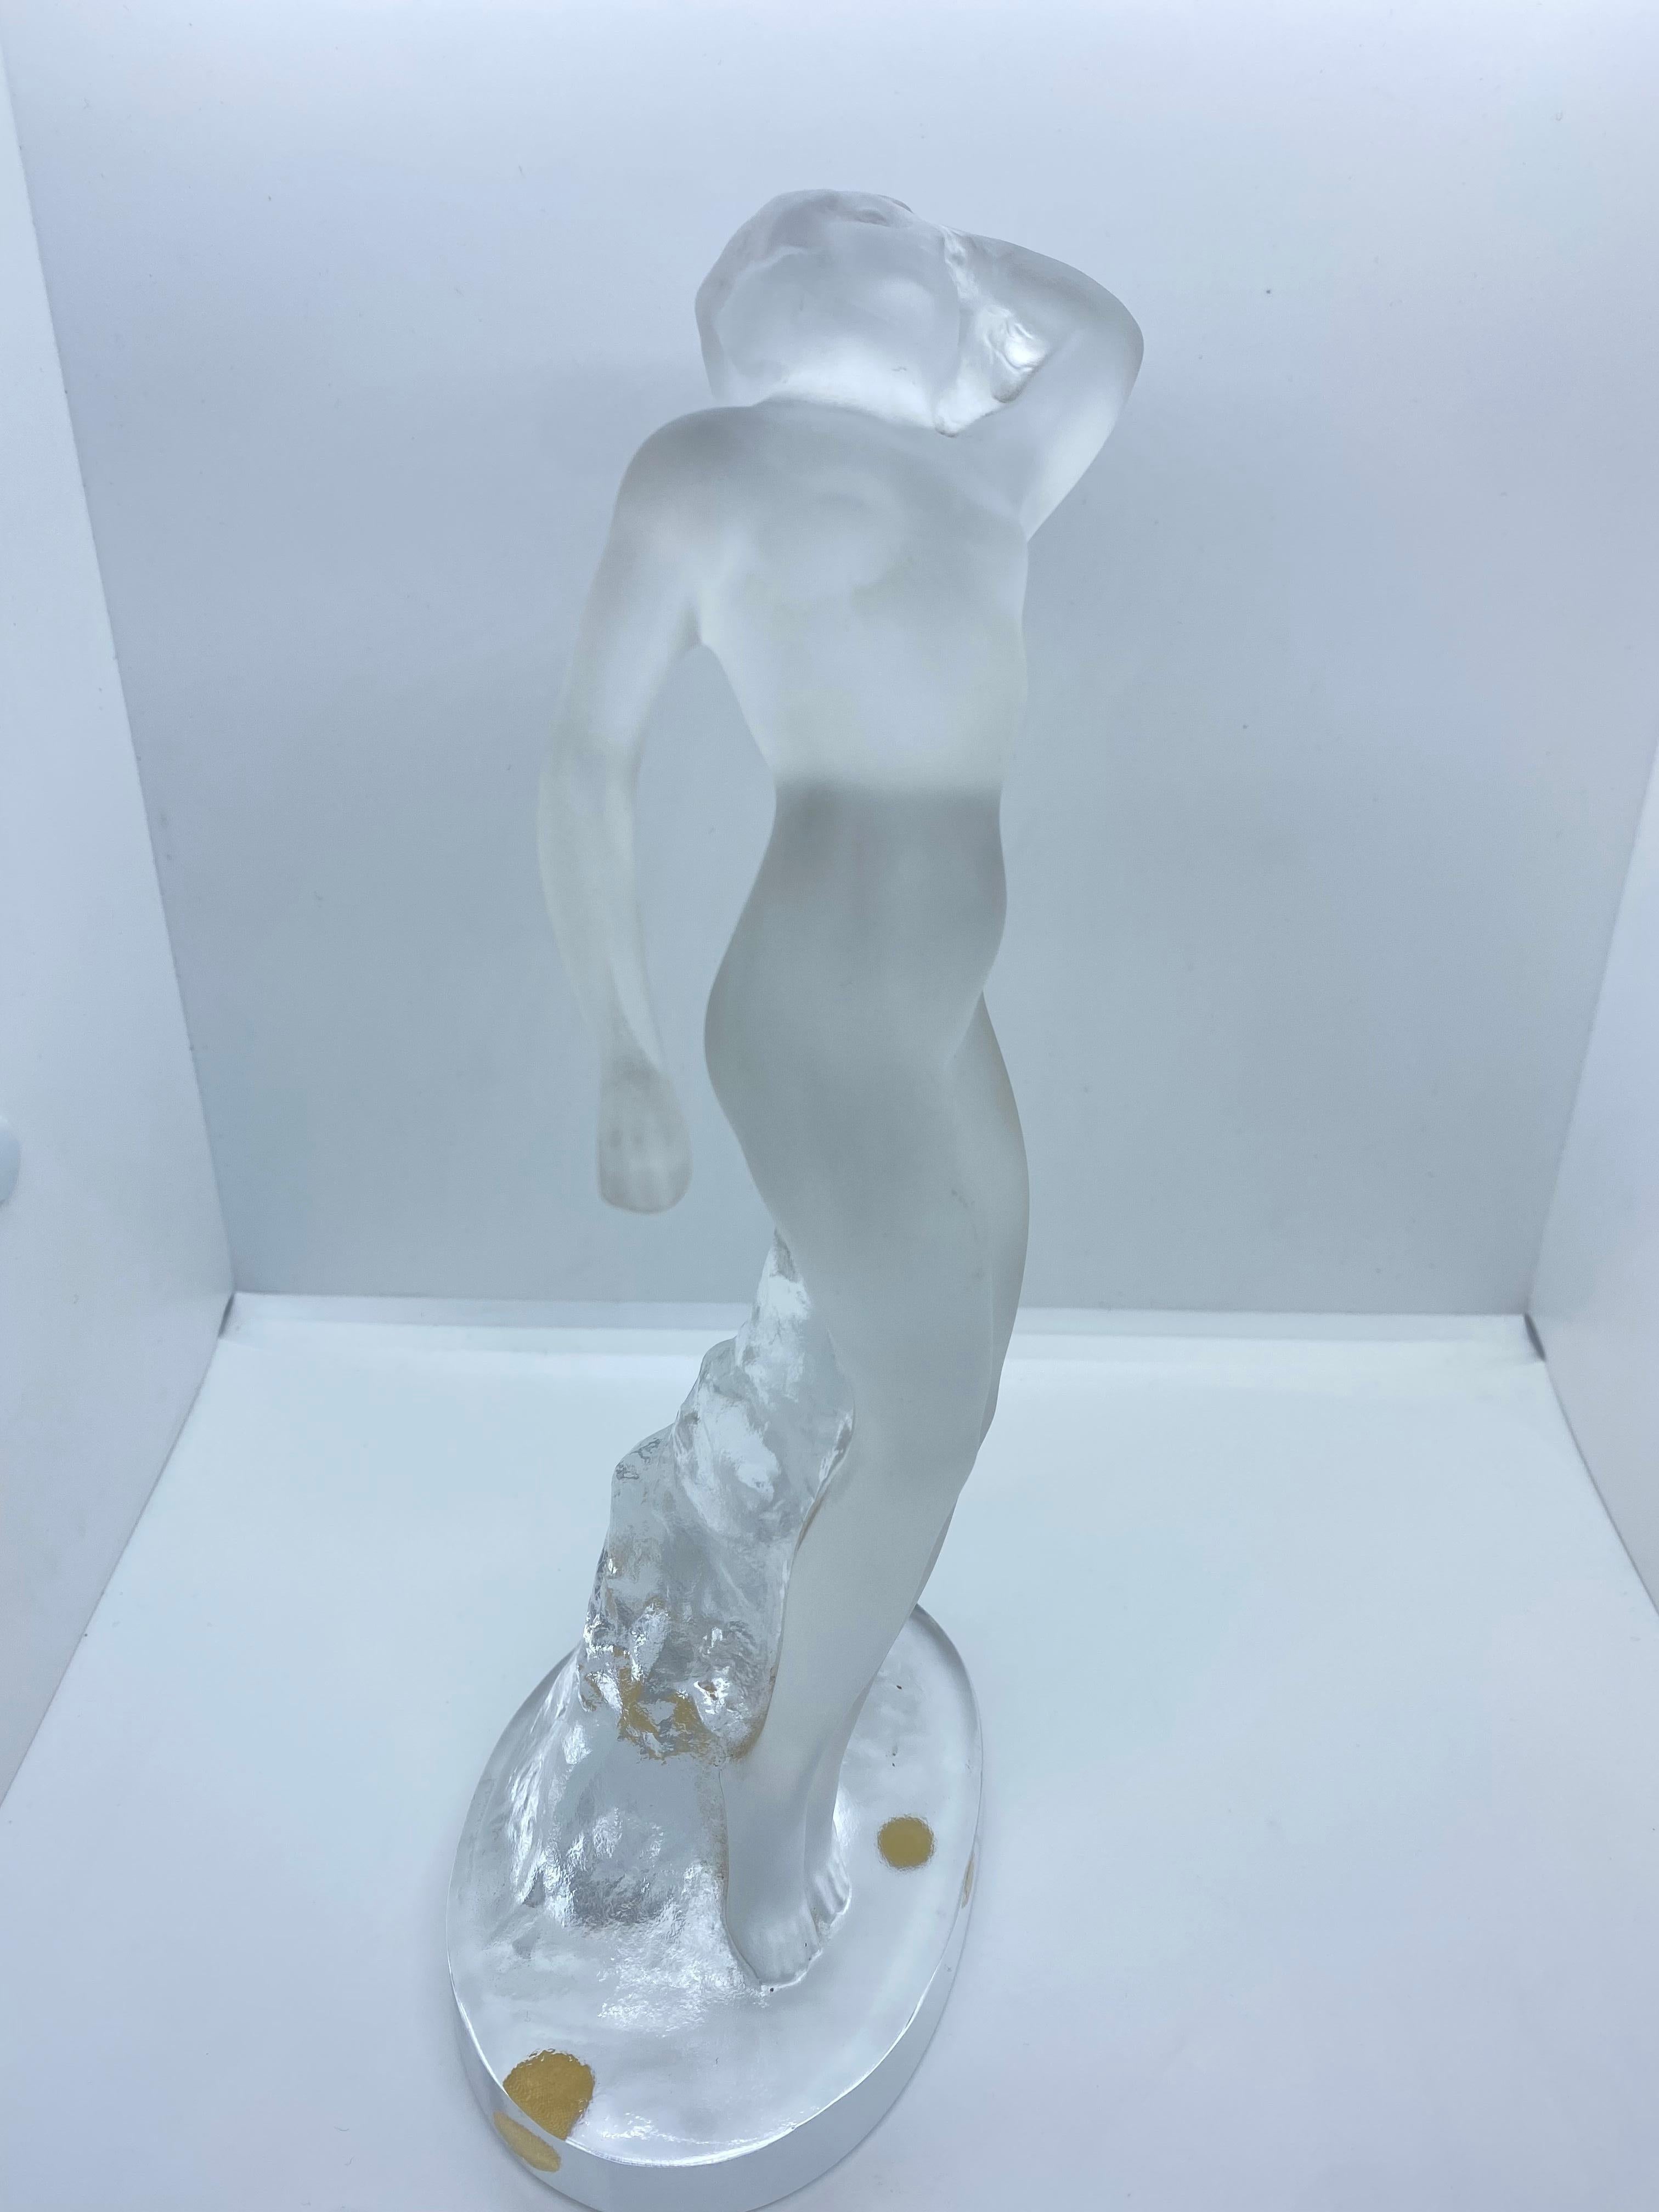 Eine schöne Kristallskulptur einer nackten Frau in erotischer Pose, stilvoll gestaltet. Die Skulptur zeigt eine nackte, mattierte Tänzerin, die mit einem Arm nach oben und einem Arm nach unten auf einem klaren, ovalen Sockel steht. Auf dem Sockel in